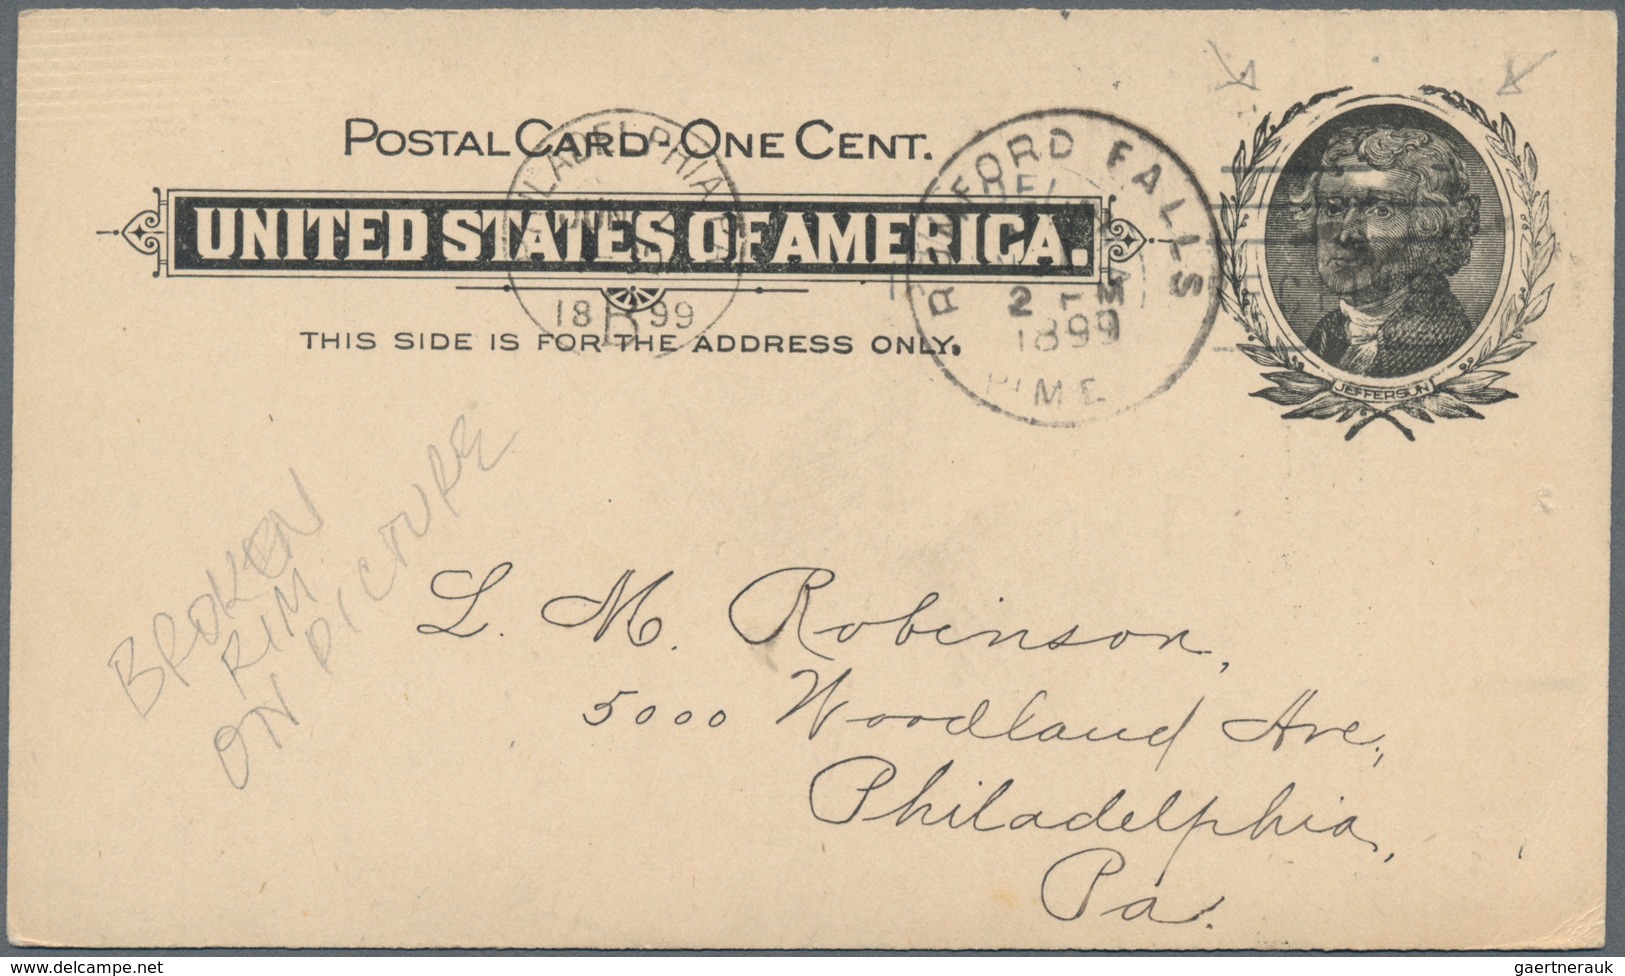 Vereinigte Staaten von Amerika - Ganzsachen: starting 1873 accumulation from specialized collector o